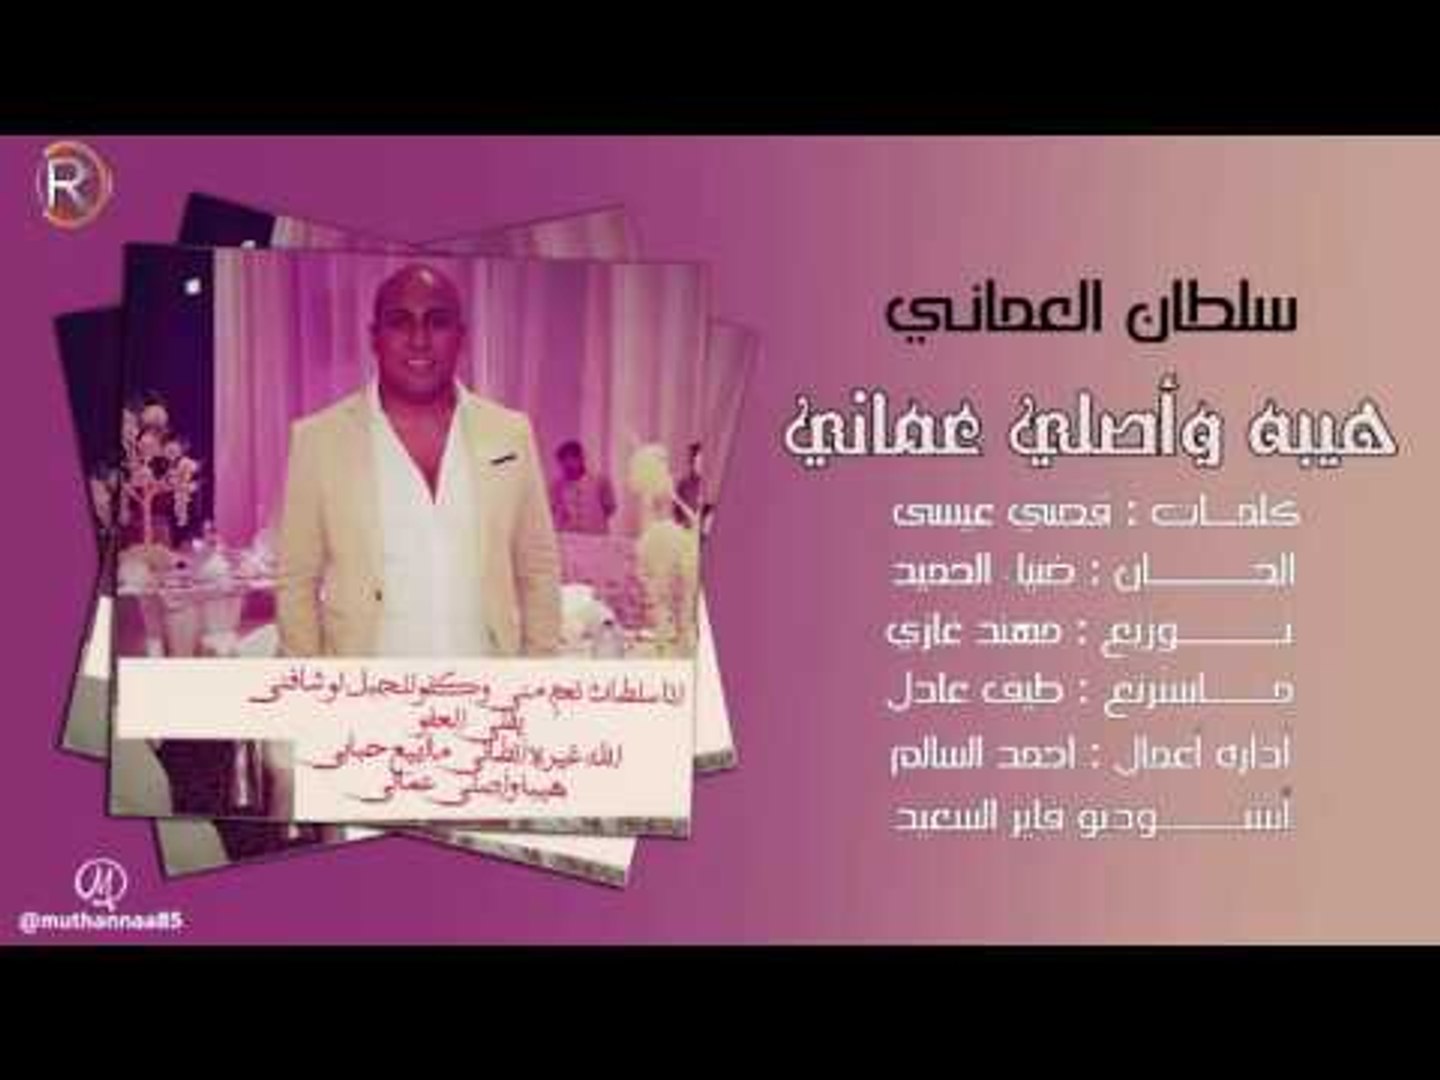 سلطان العماني - هيبة واصلي عماني / Audio - فيديو Dailymotion